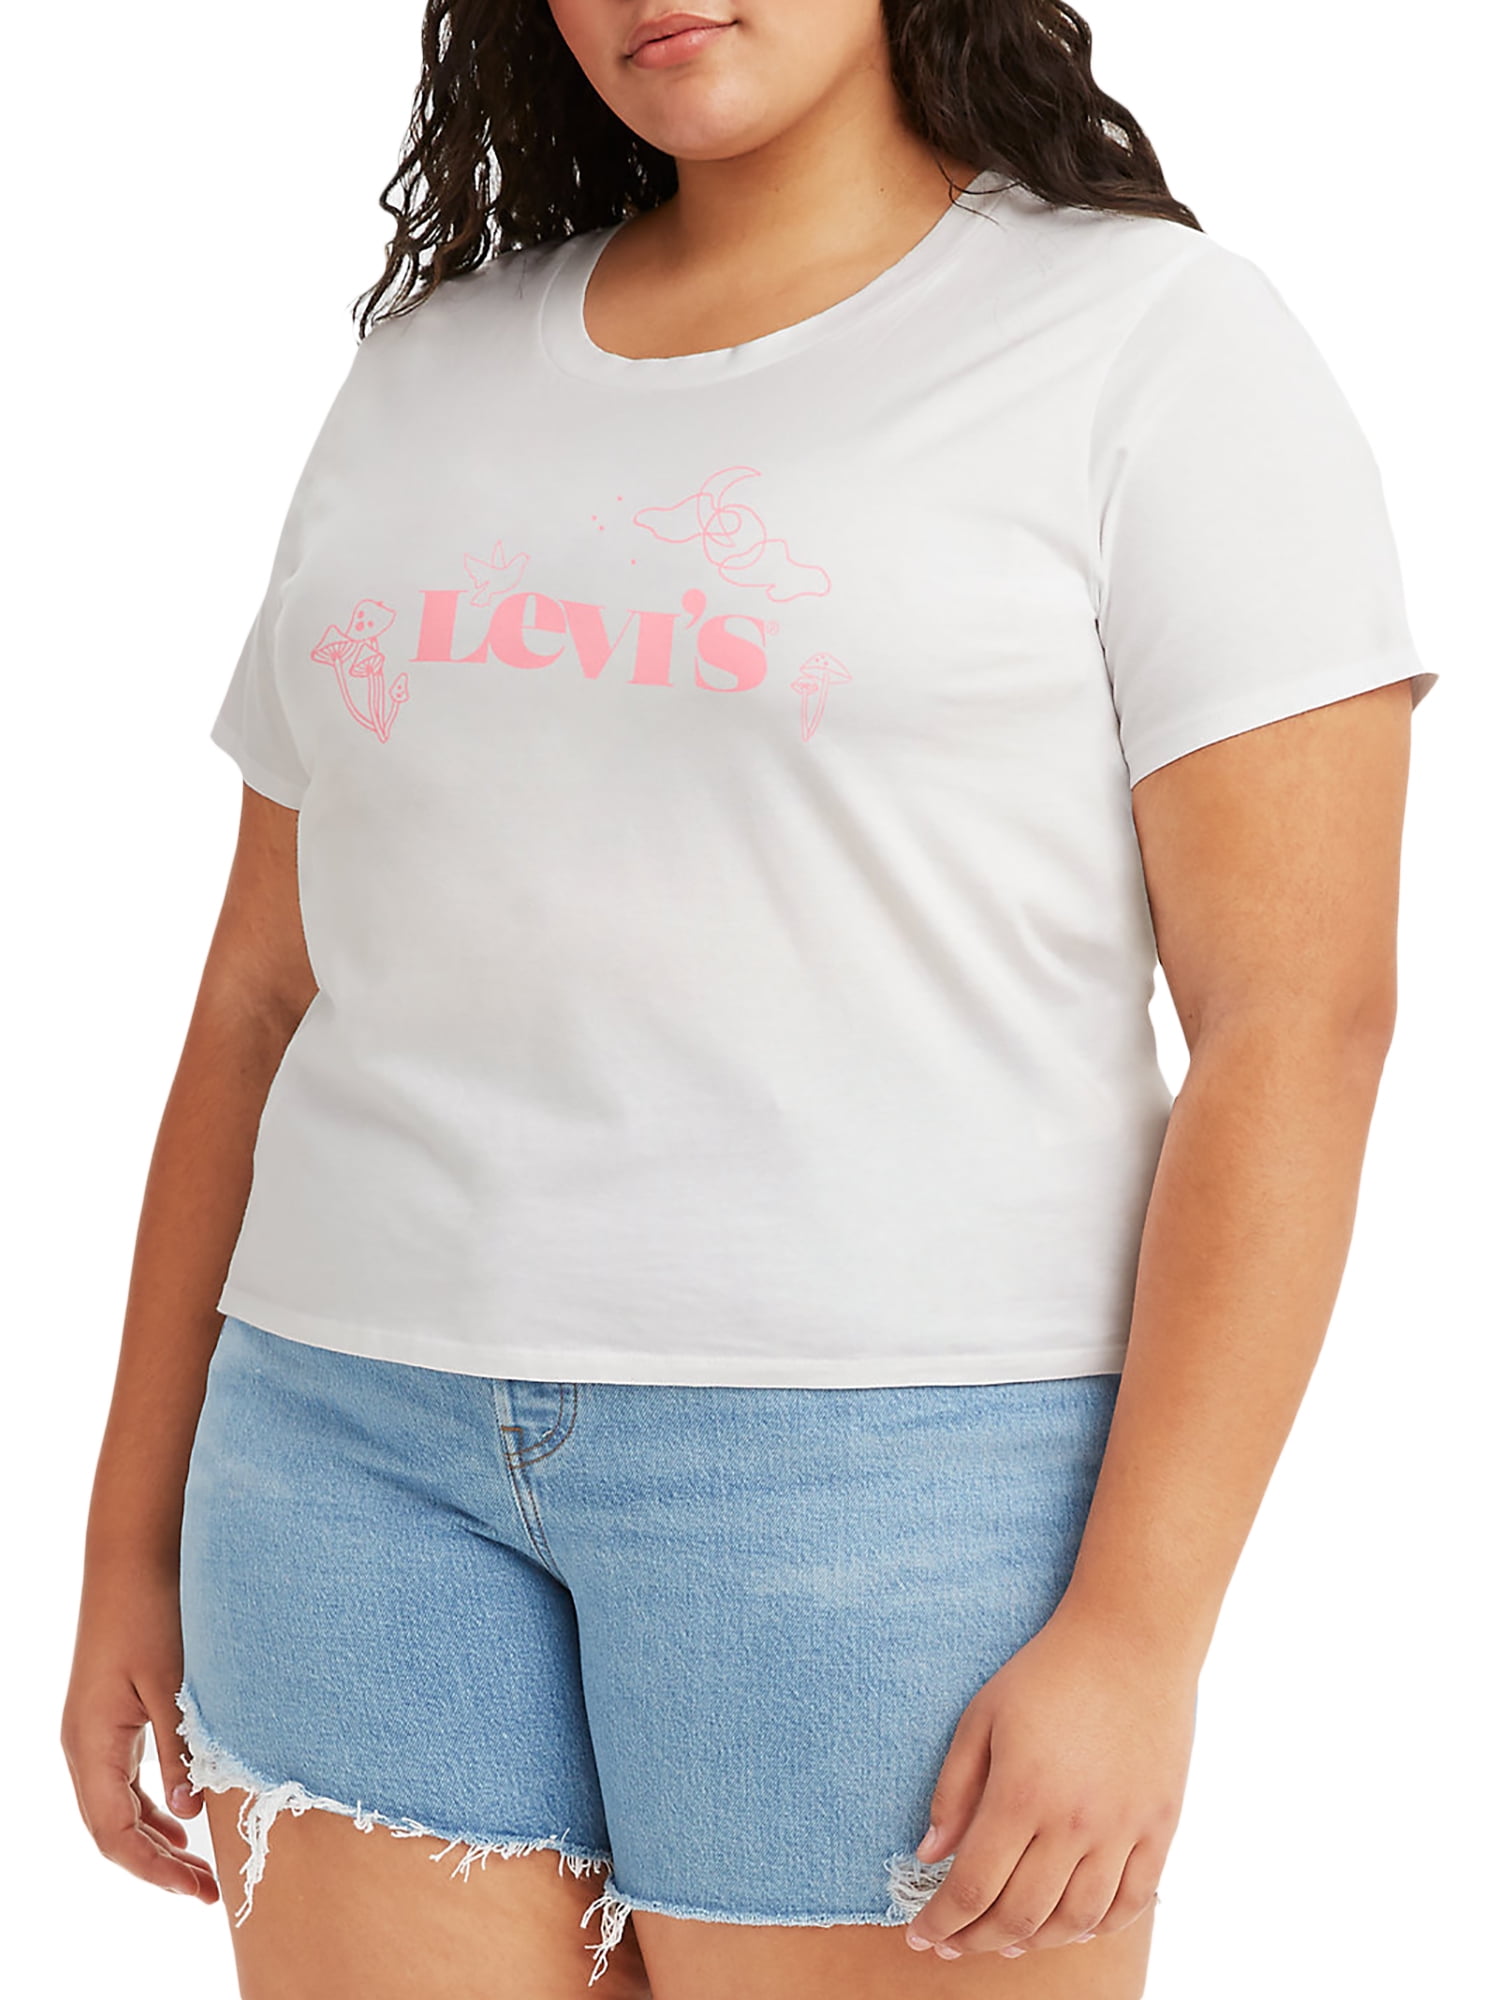 Levi's Women's Perfect Logo Tee - White - Size Medium